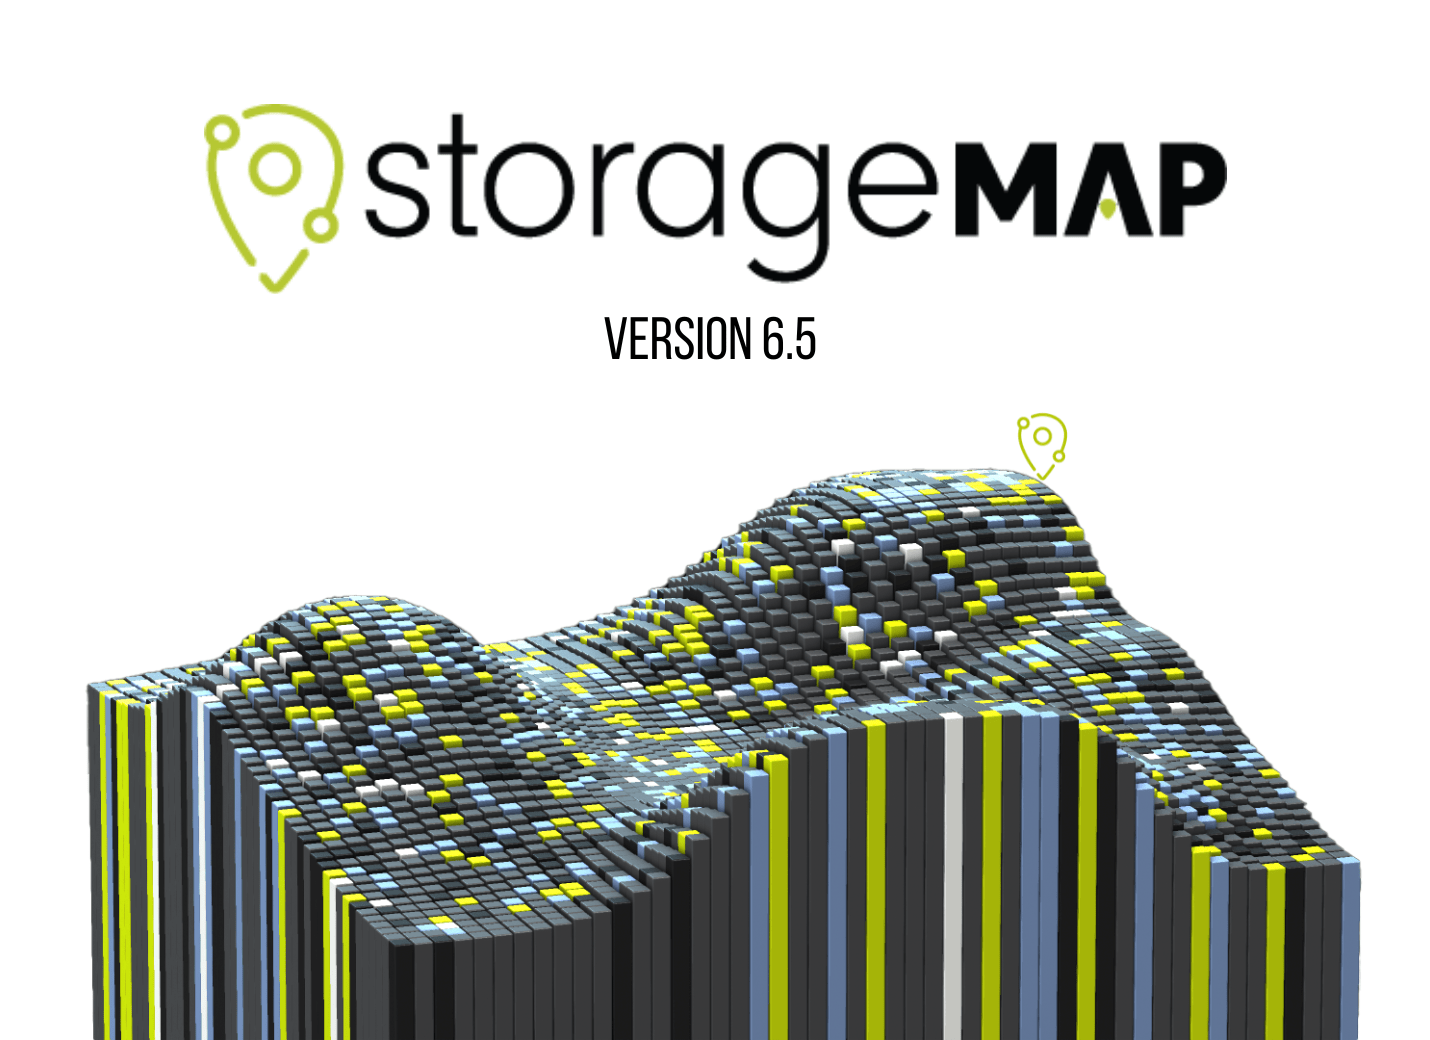 StorageMAP v6.5